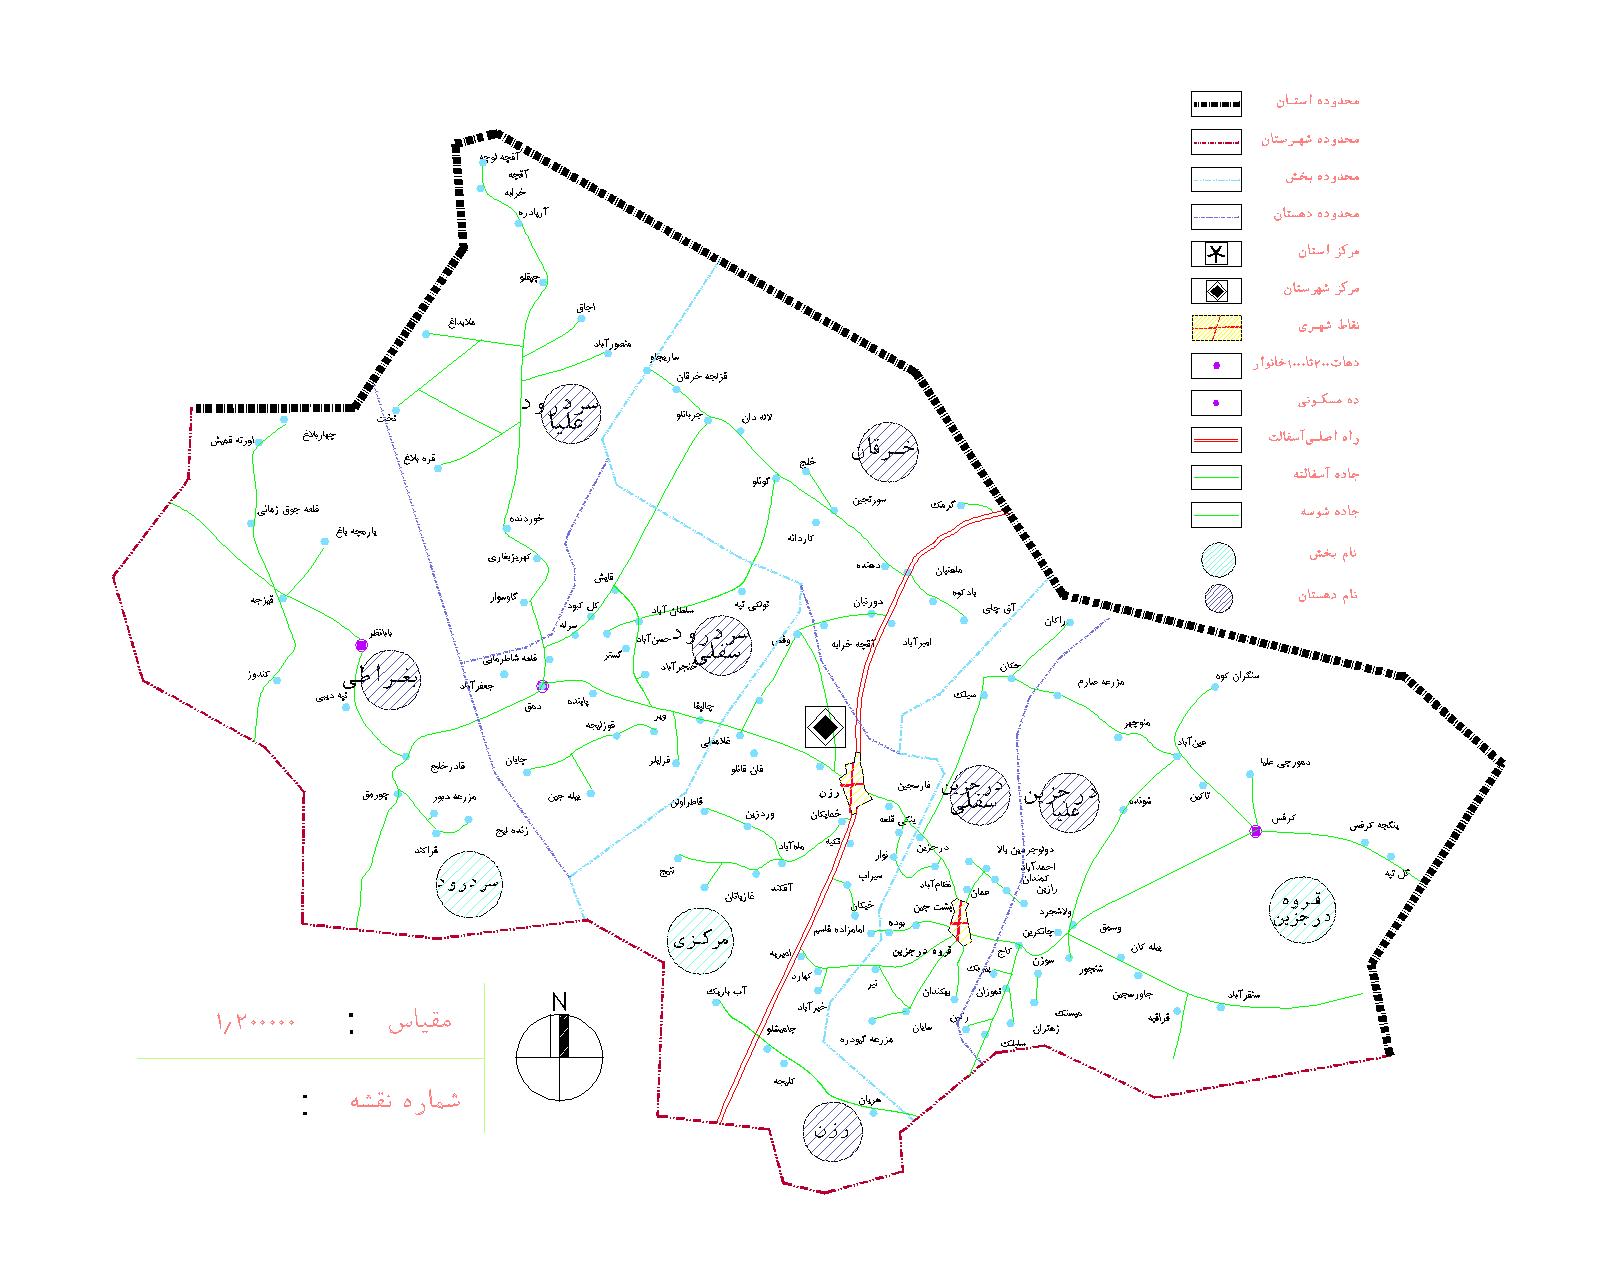 دانلود نقشه اتوکدی شهرستان رزن - استان همدان - فایل کده: فروشگاه همه!